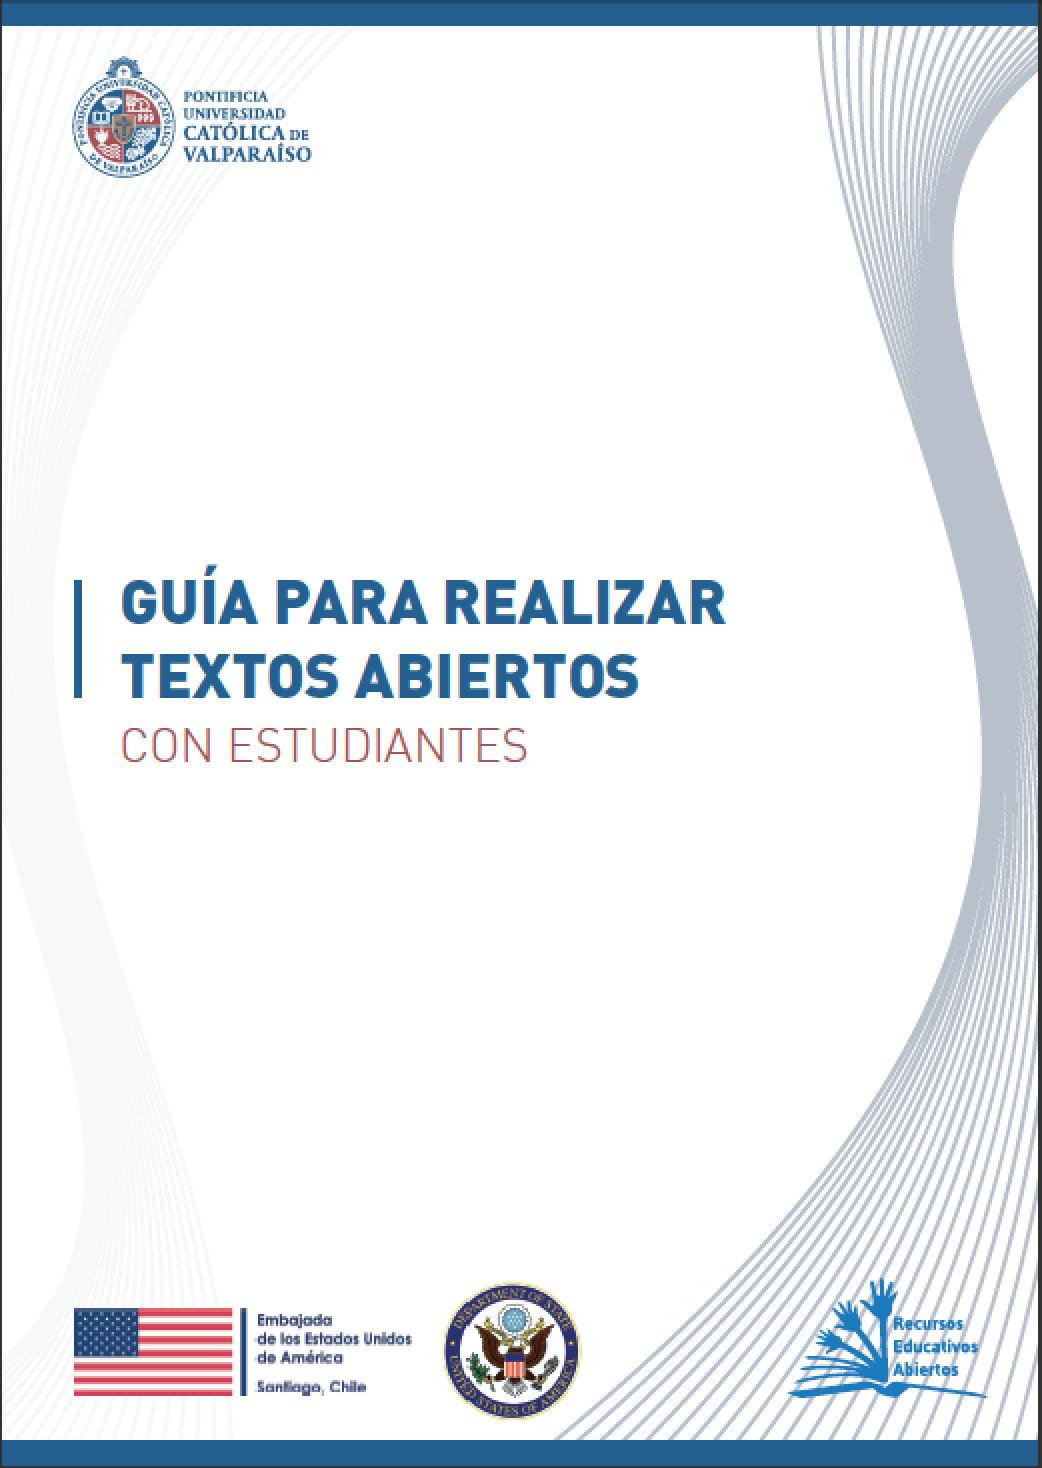 Read more about Guía Para Realizar Textos Abiertos Con Estudiantes